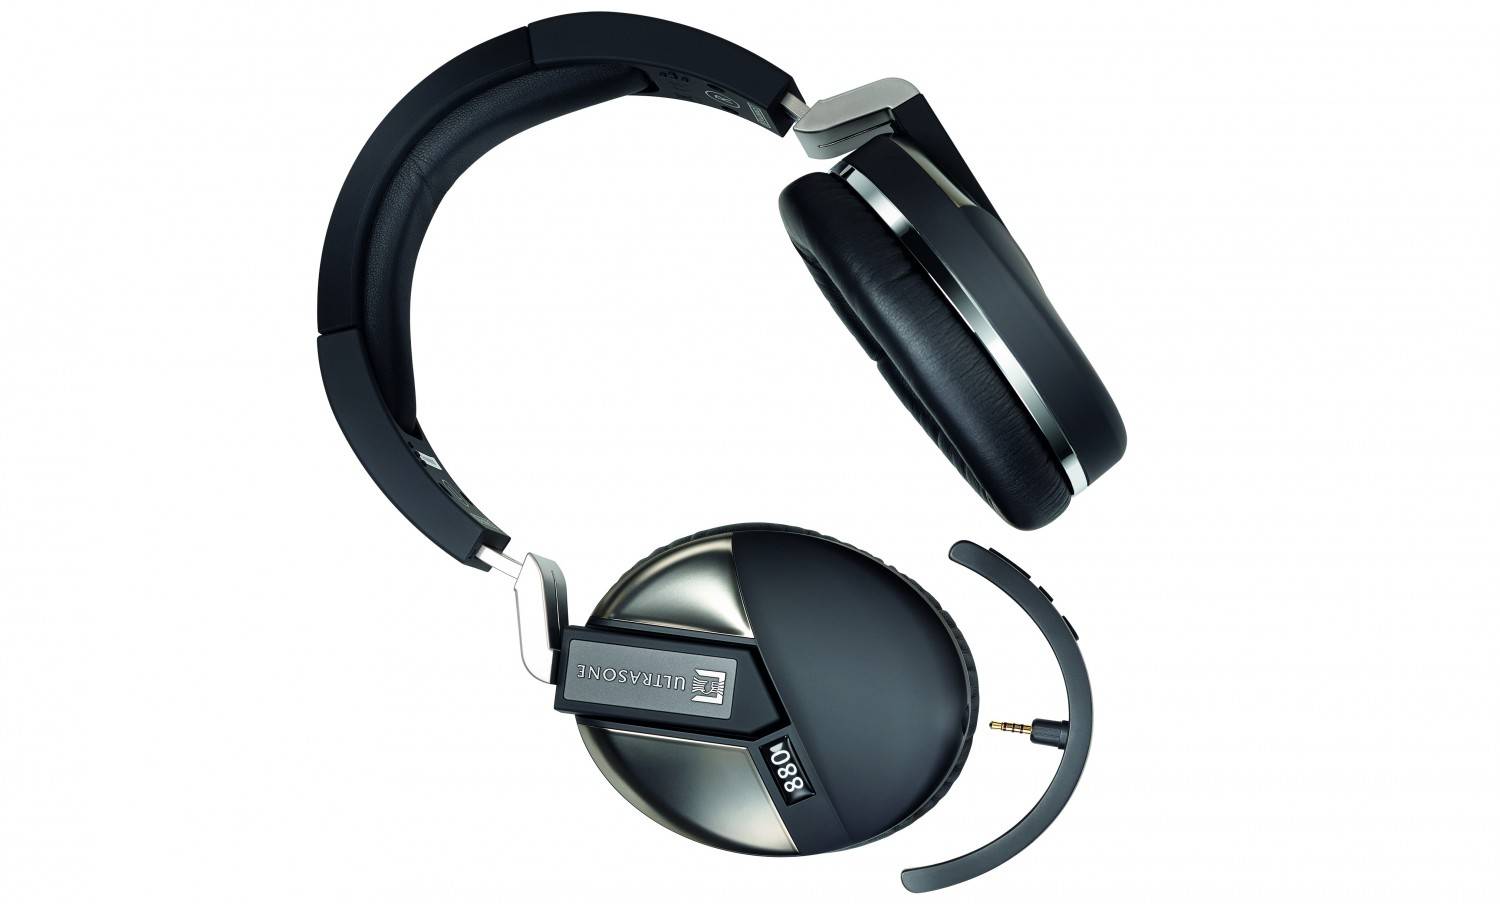 HiFi Sirius-Adapter von Ultrasone macht ab sofort aus jedem Kopfhörer ein Bluetooth-Modell - News, Bild 1